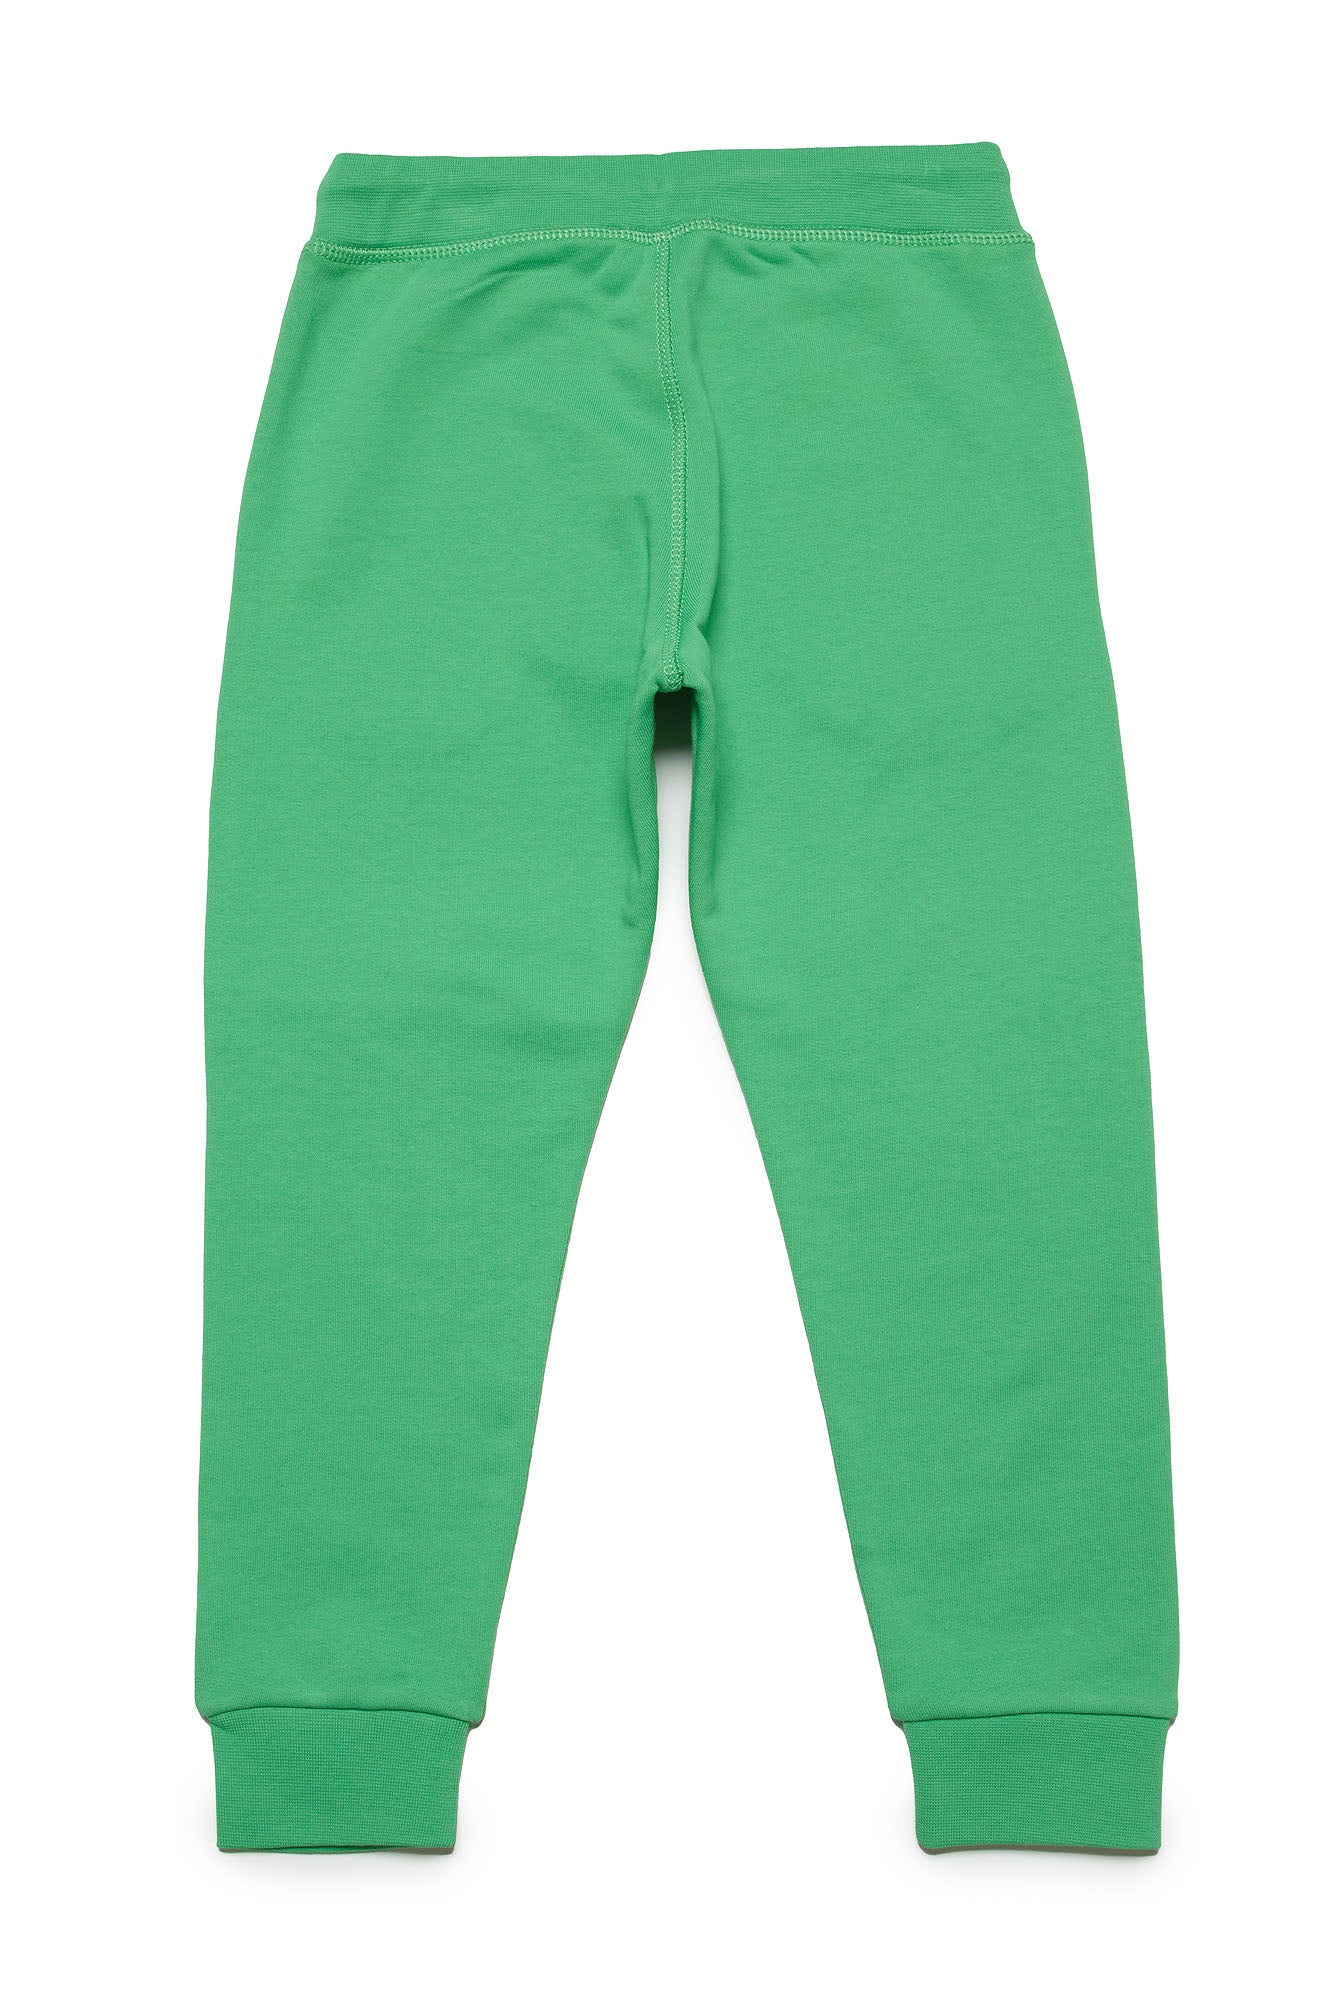 Dsquared2 Unisex Child Pants DQ1766 D0A4D Vibrant Green